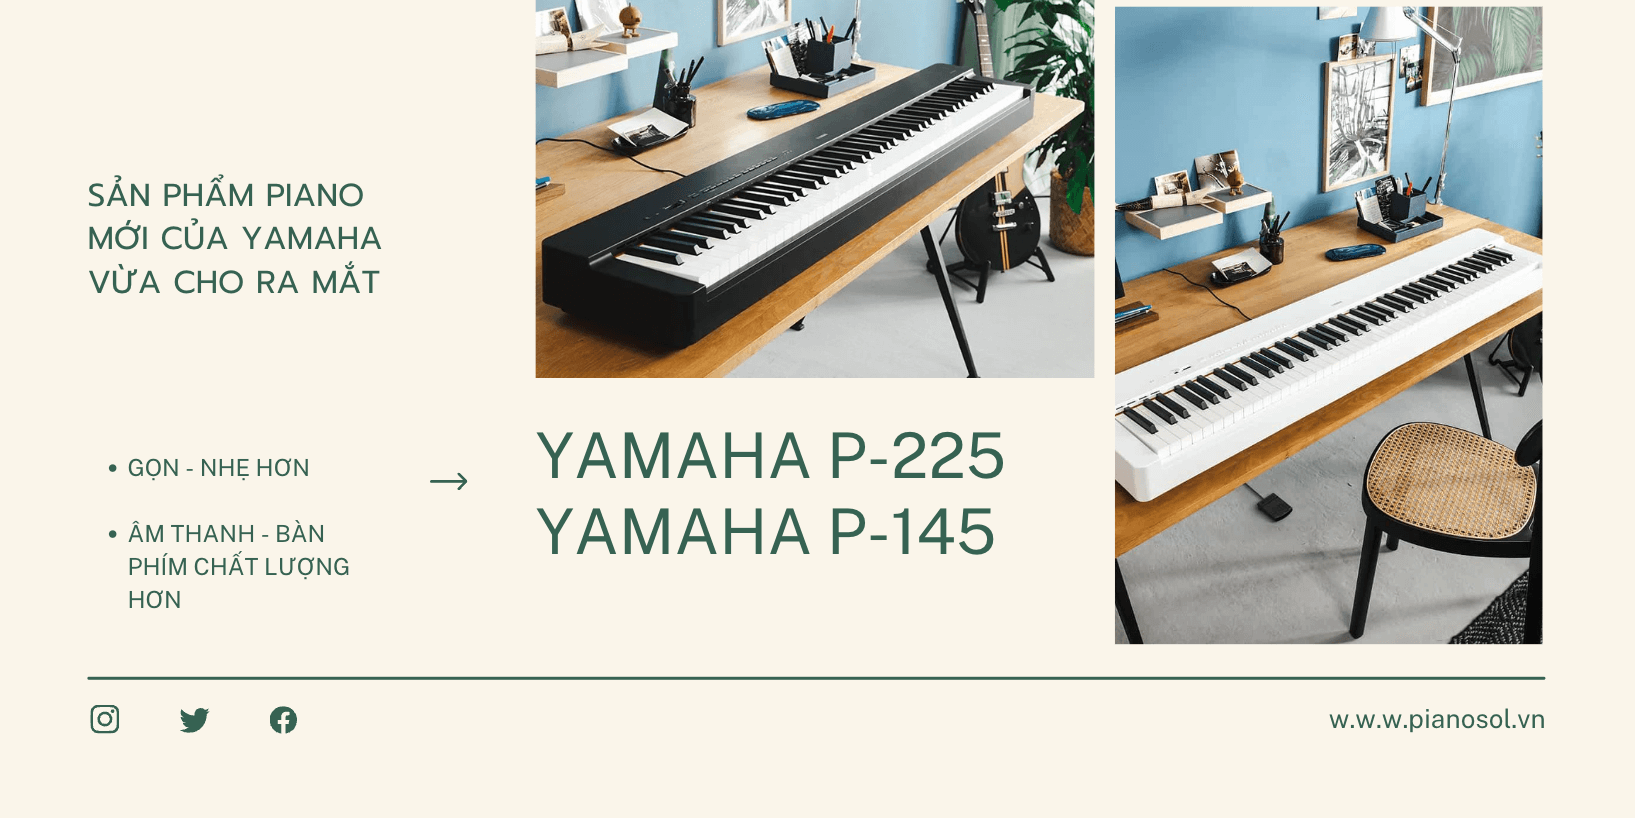 Review sản phẩm mới - yamaha P-225 và Yamaha P-145